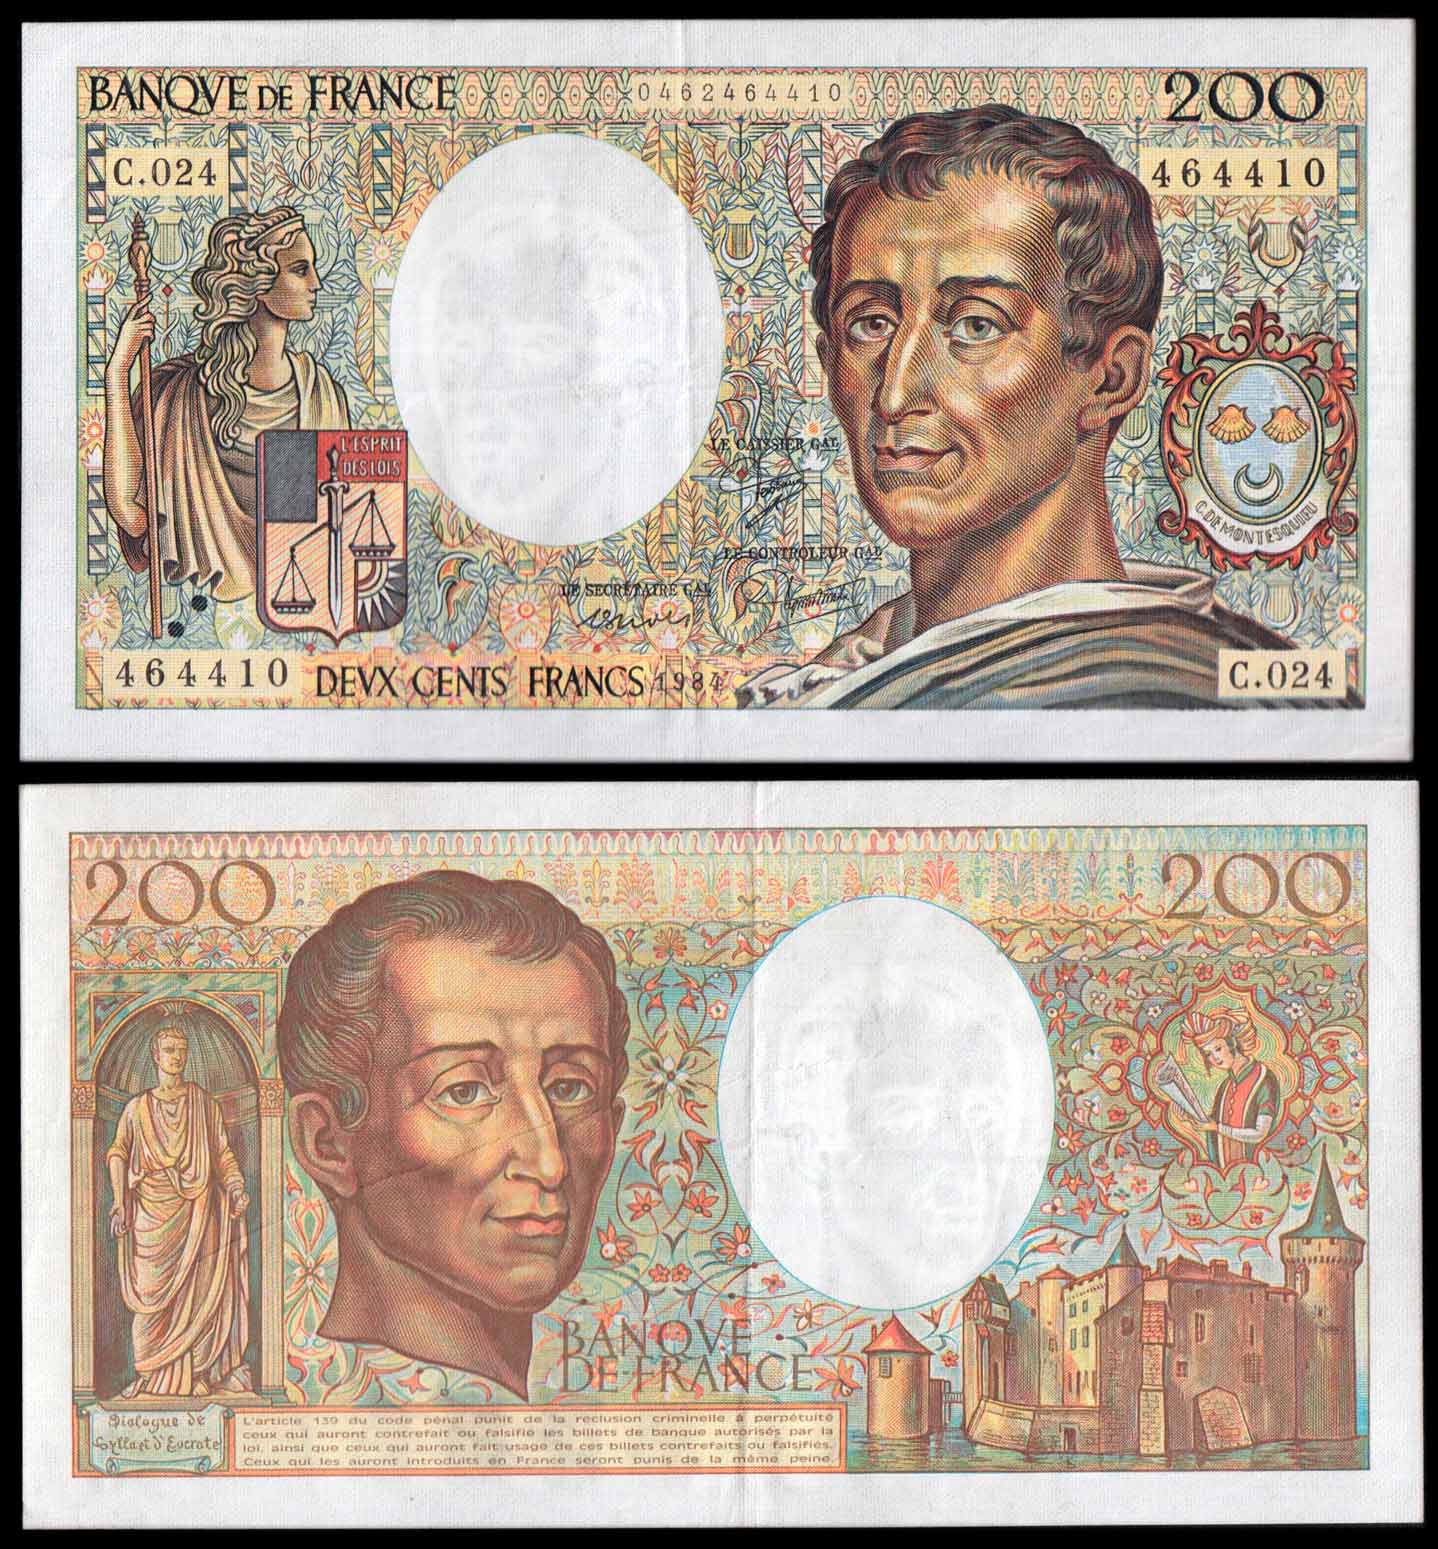 FRANCIA 200 Franchi Barone di Montesquieu 1984 Superba